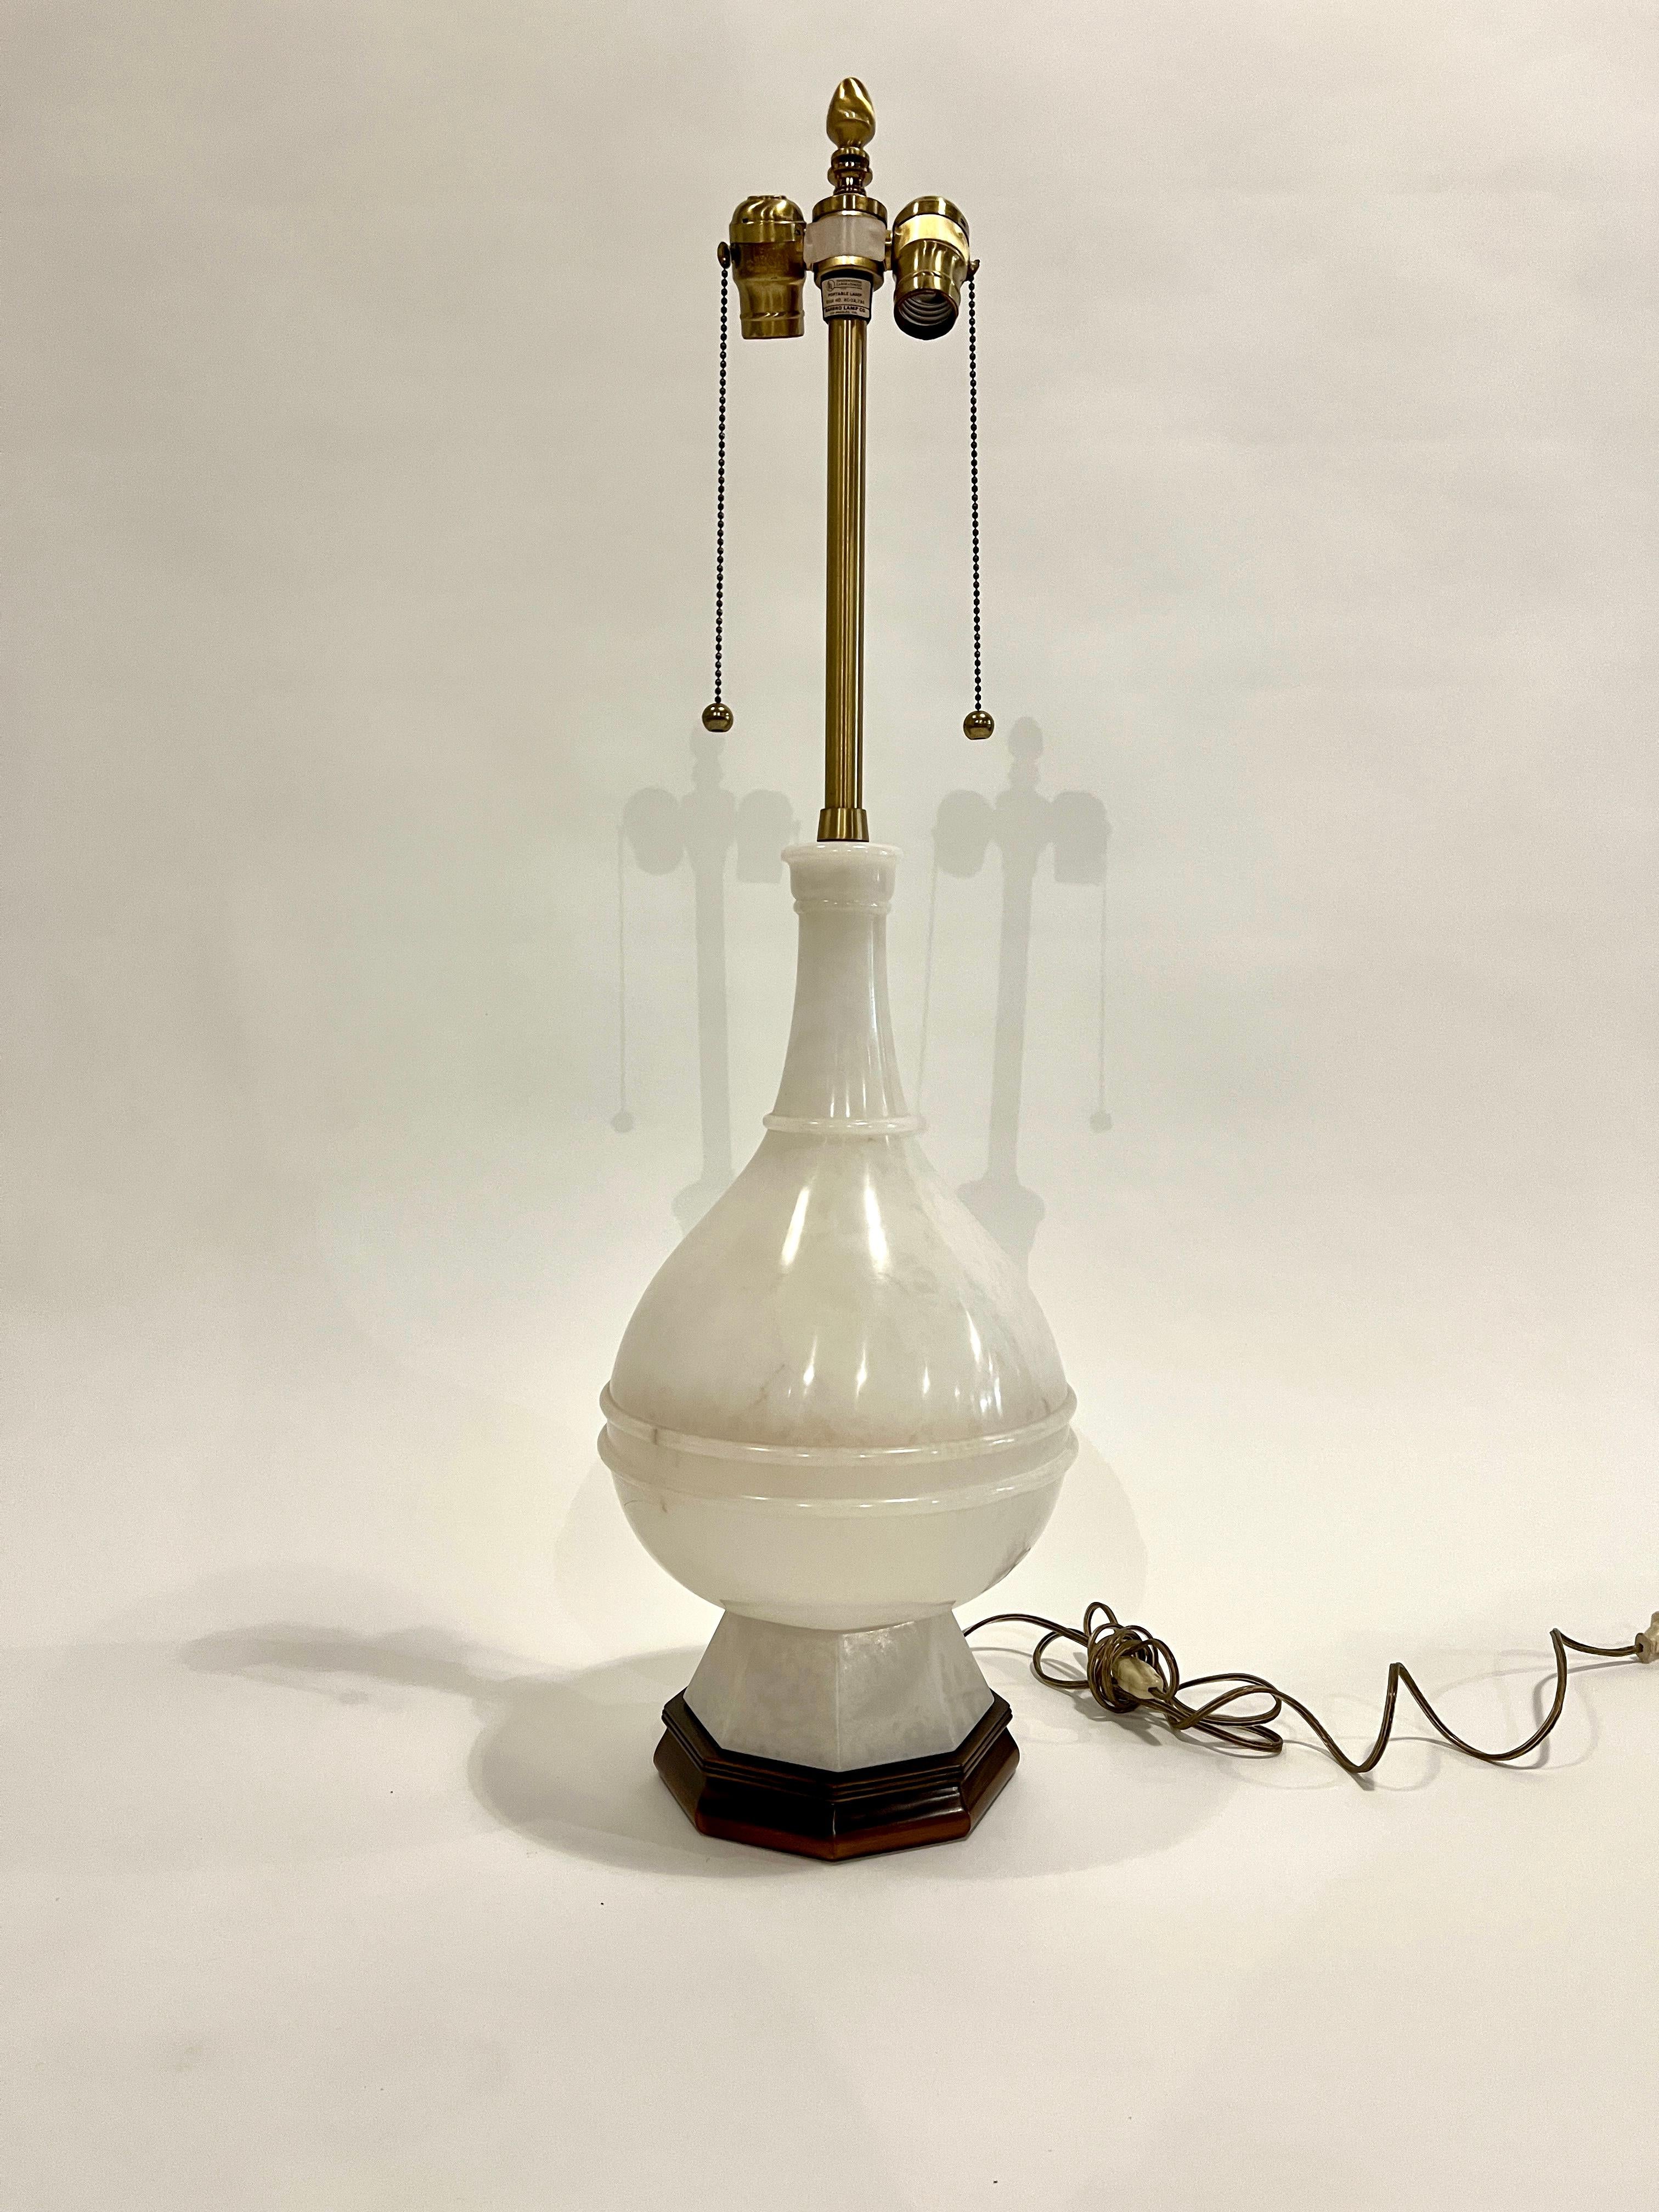 Lampe de table en albâtre de style régence hollywoodienne du milieu du siècle par The Table Company avec abat-jour plissé en soie d'origine. L'abat-jour mesure 18